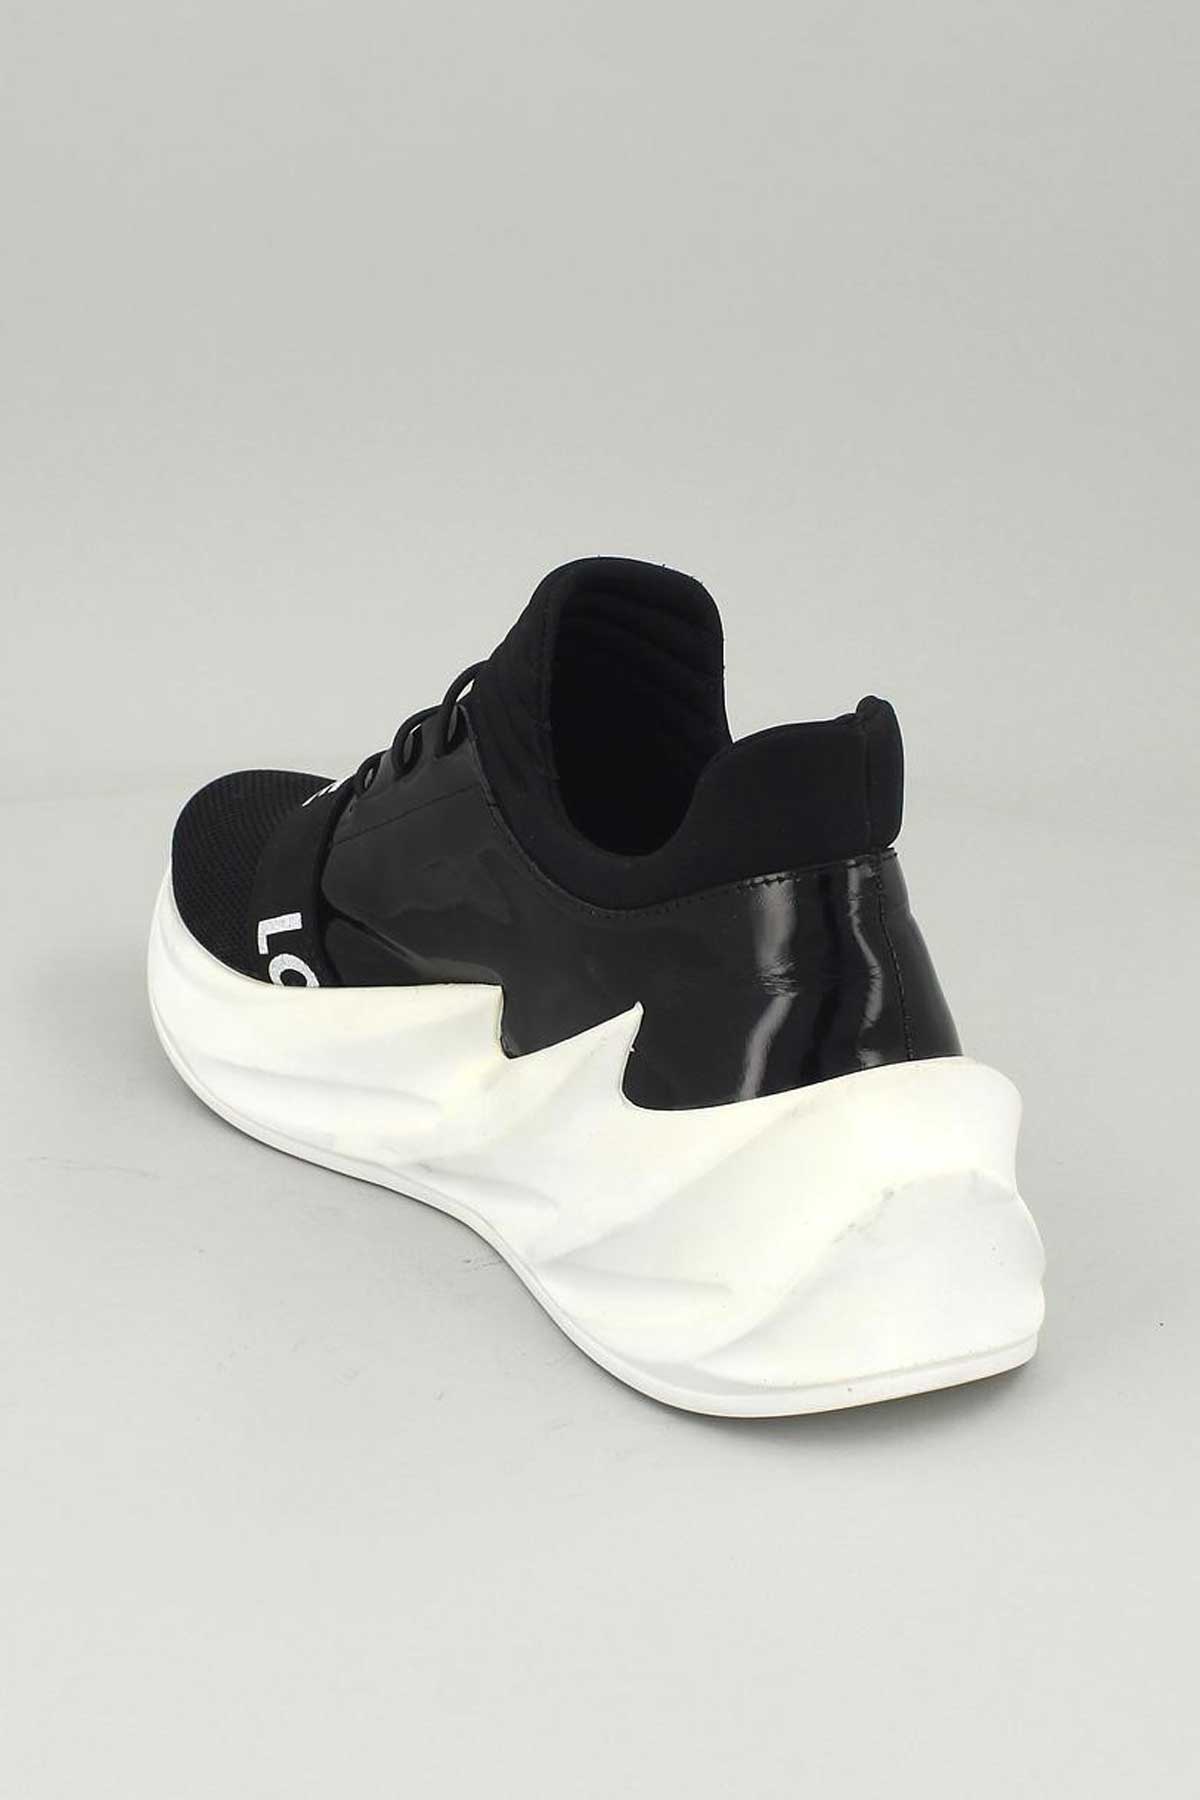 Kadın Deri Sneakers Siyah 13791Y - Thumbnail